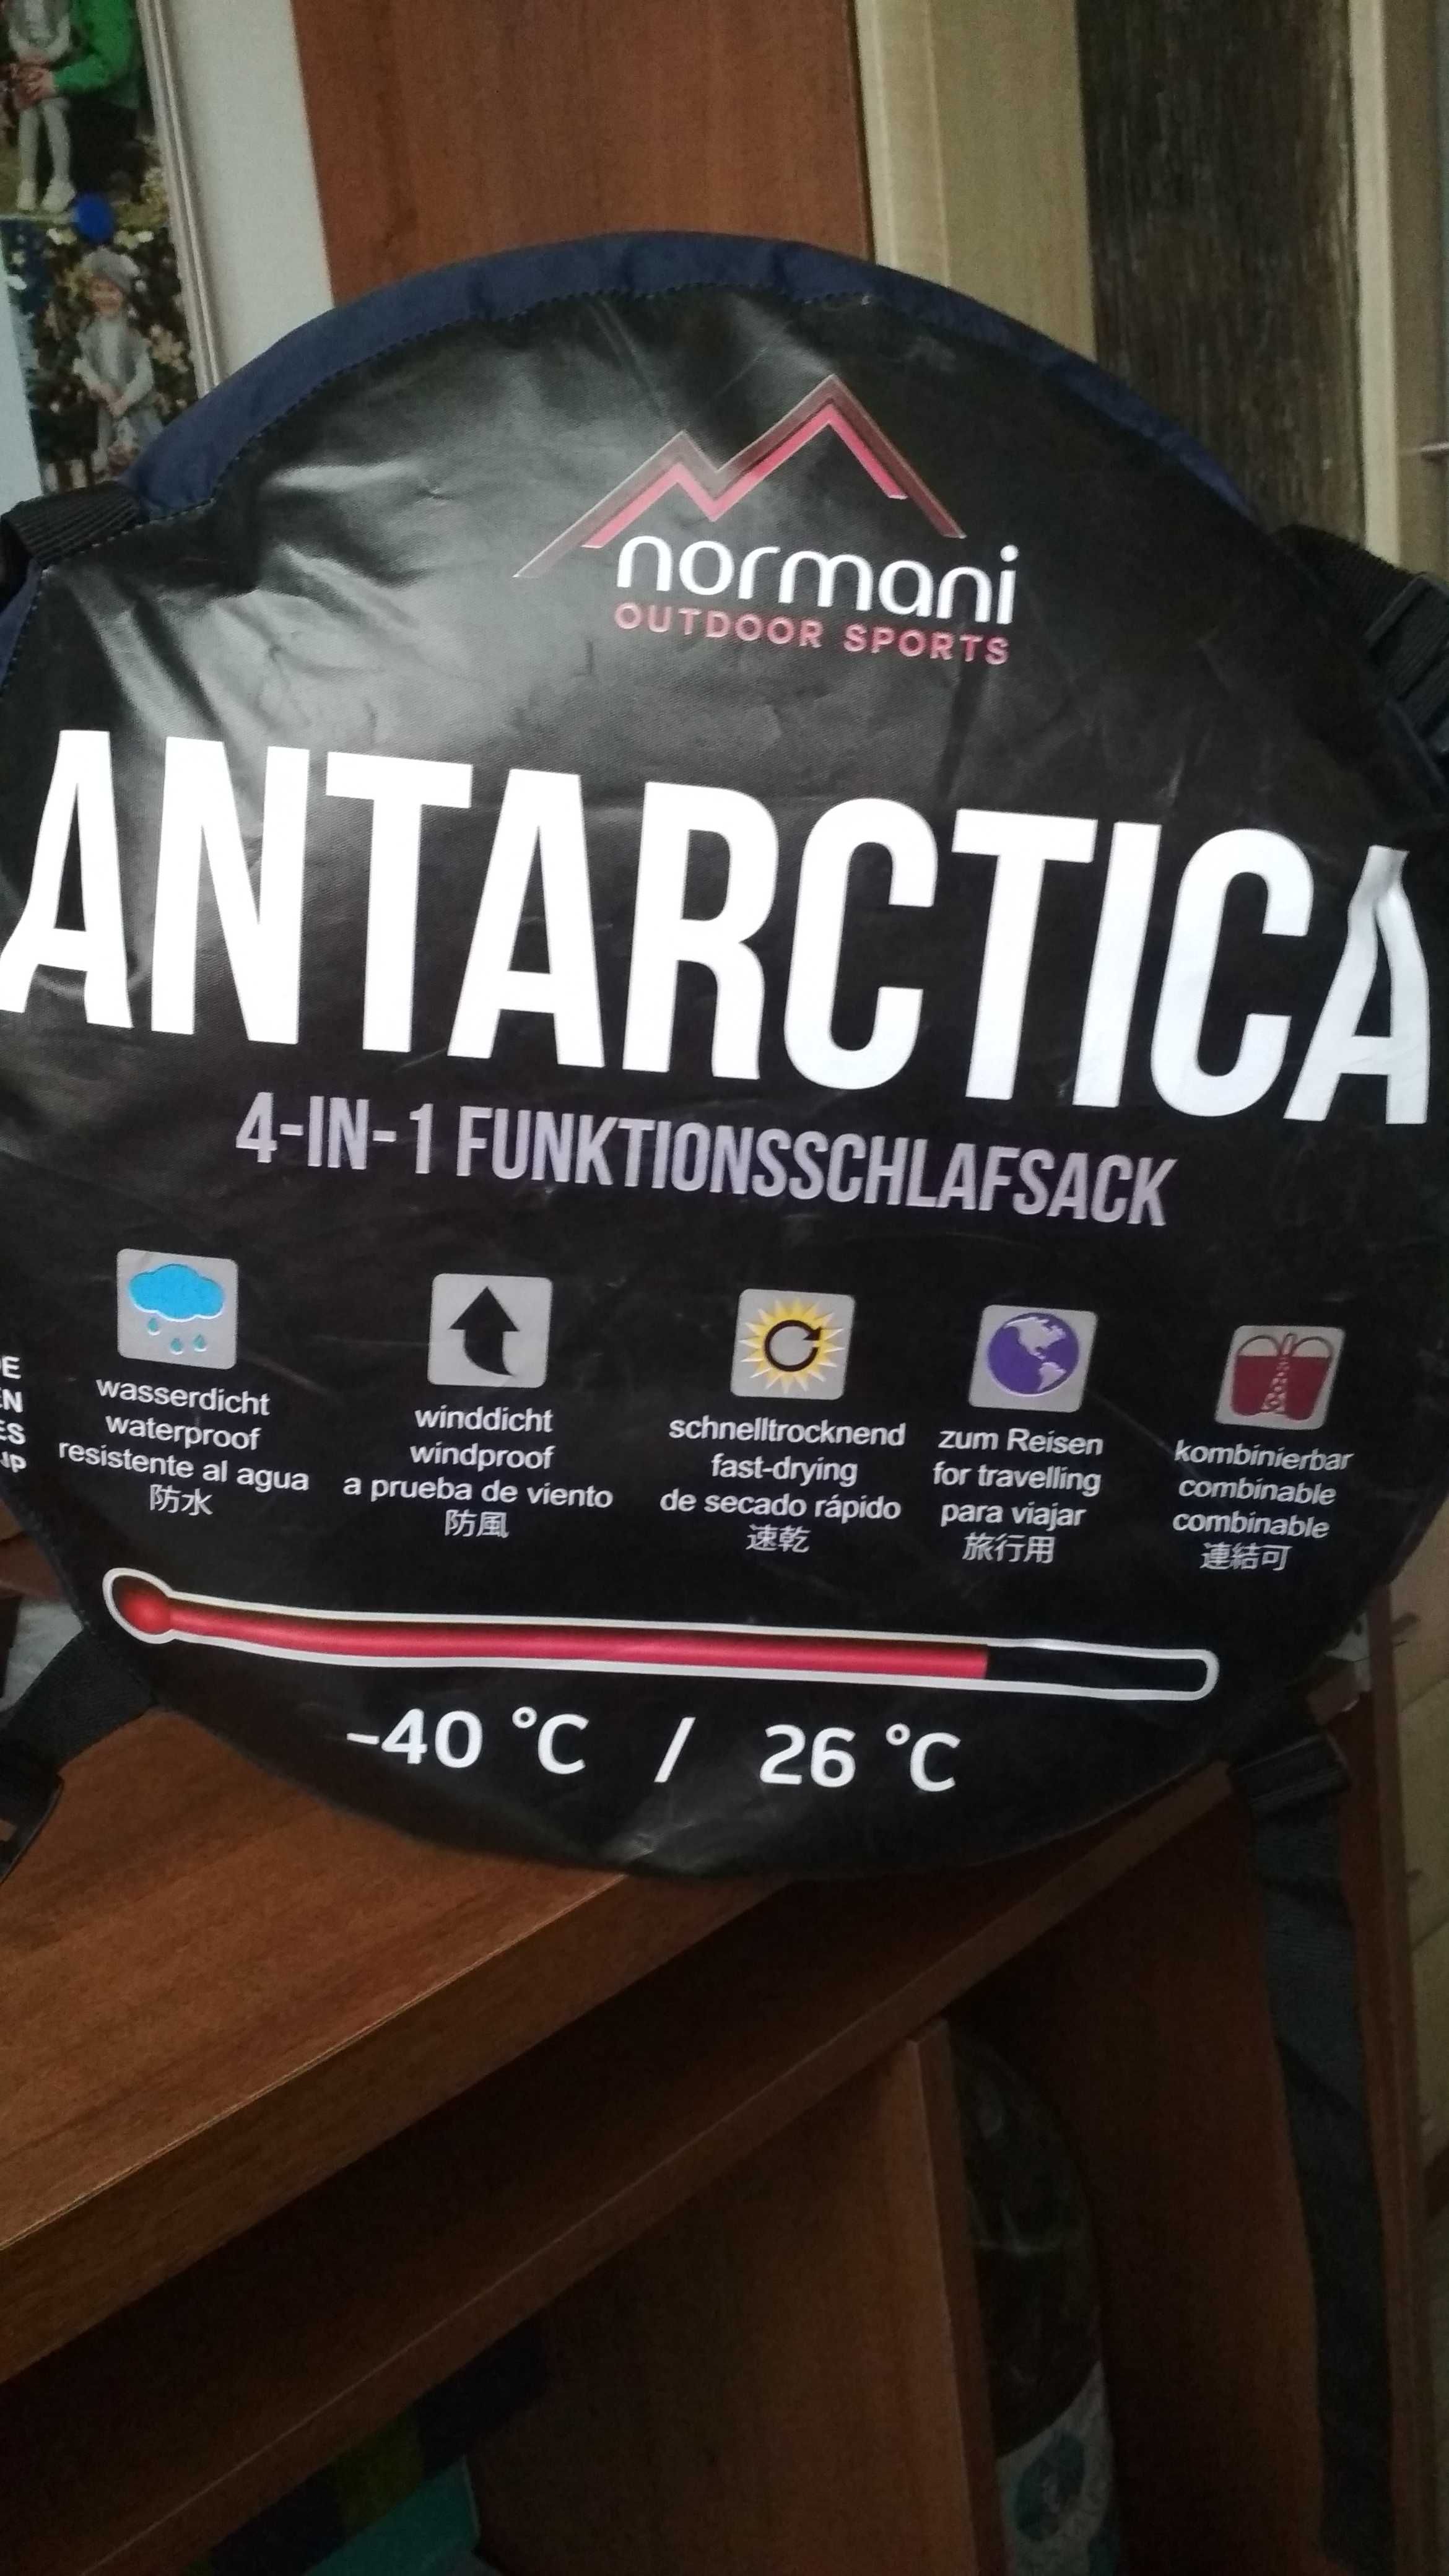 Спальный мешок "Аntarctica" Normani Outdoor